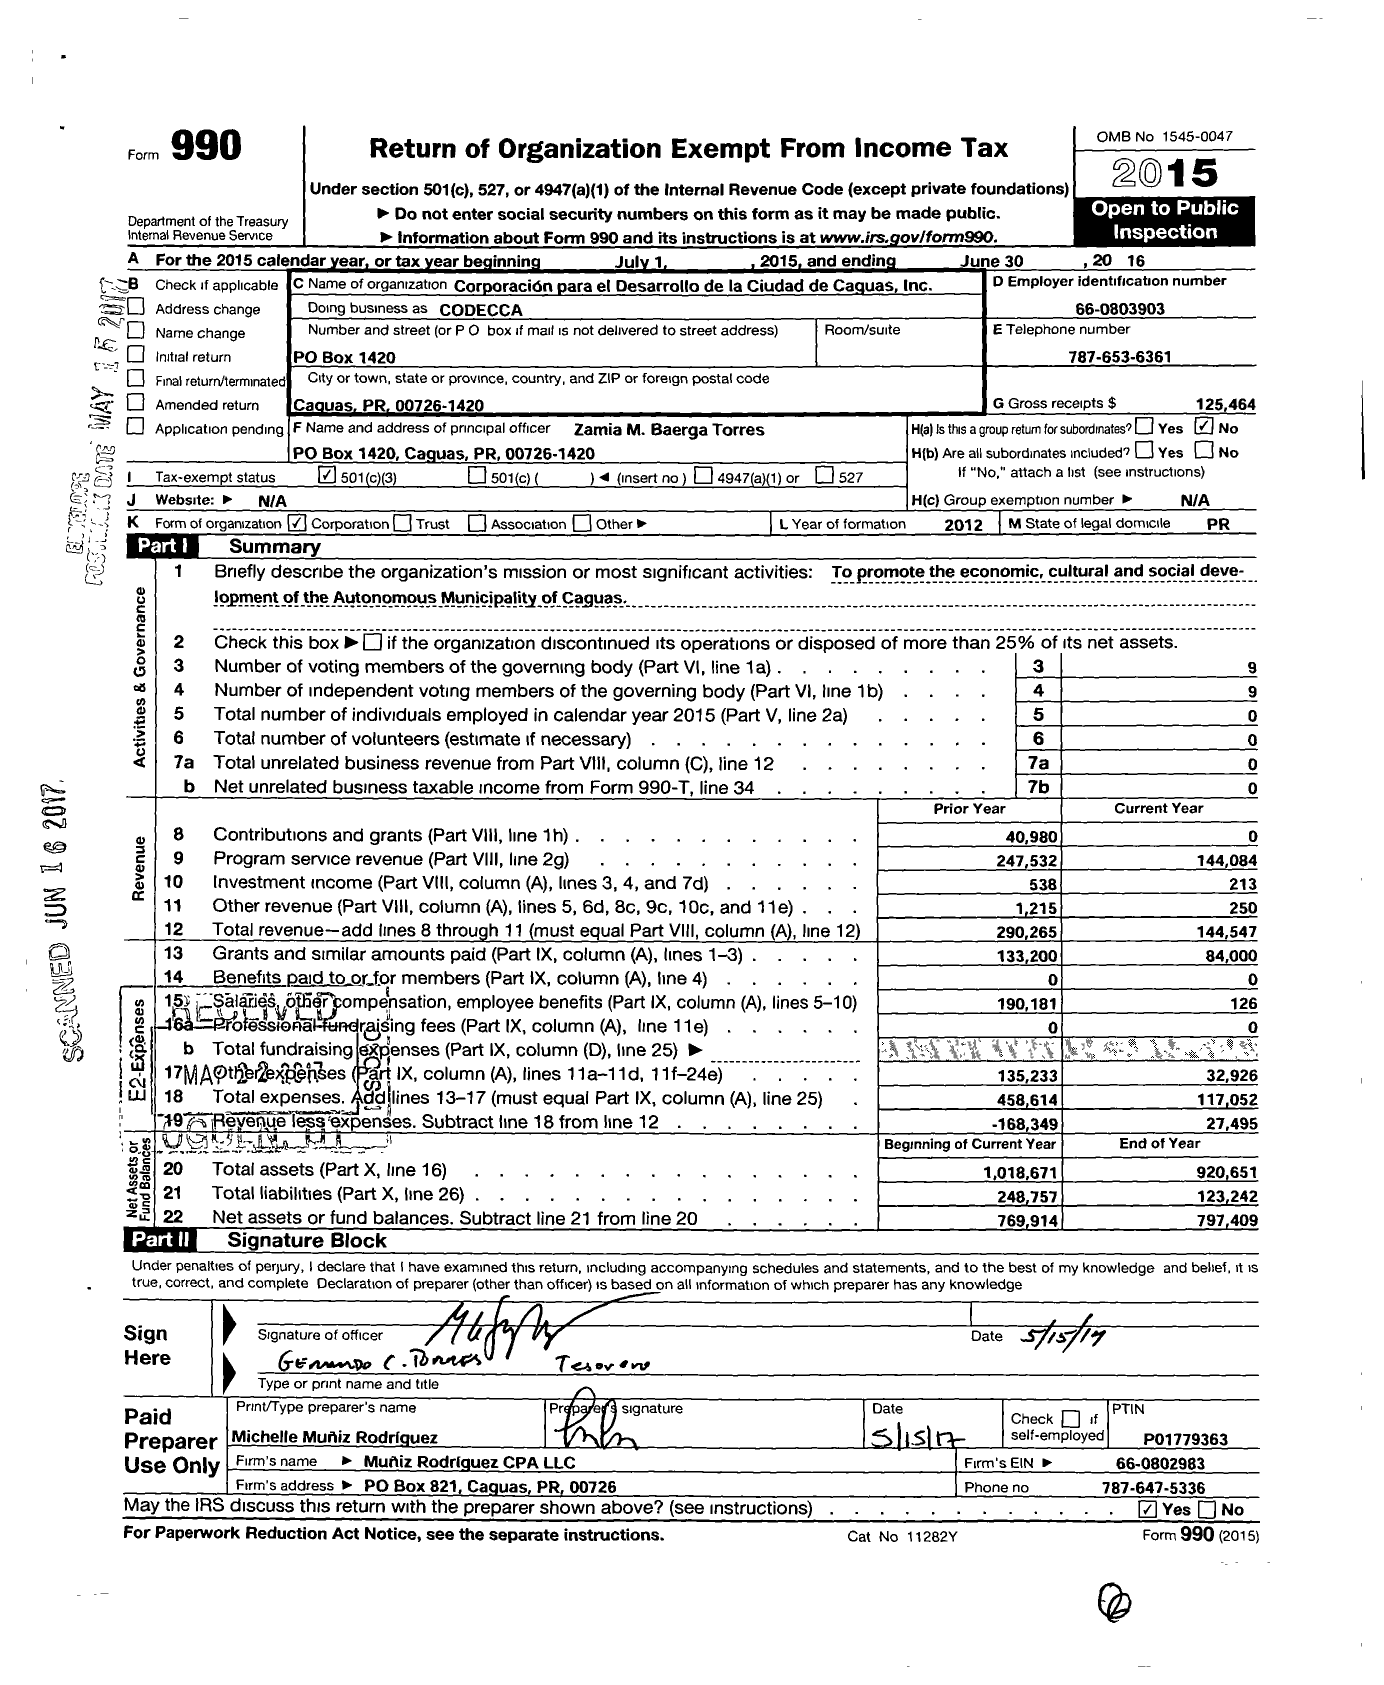 Image of first page of 2015 Form 990 for Corporacion Para El Desarrollo de La Ciudad de Caguas